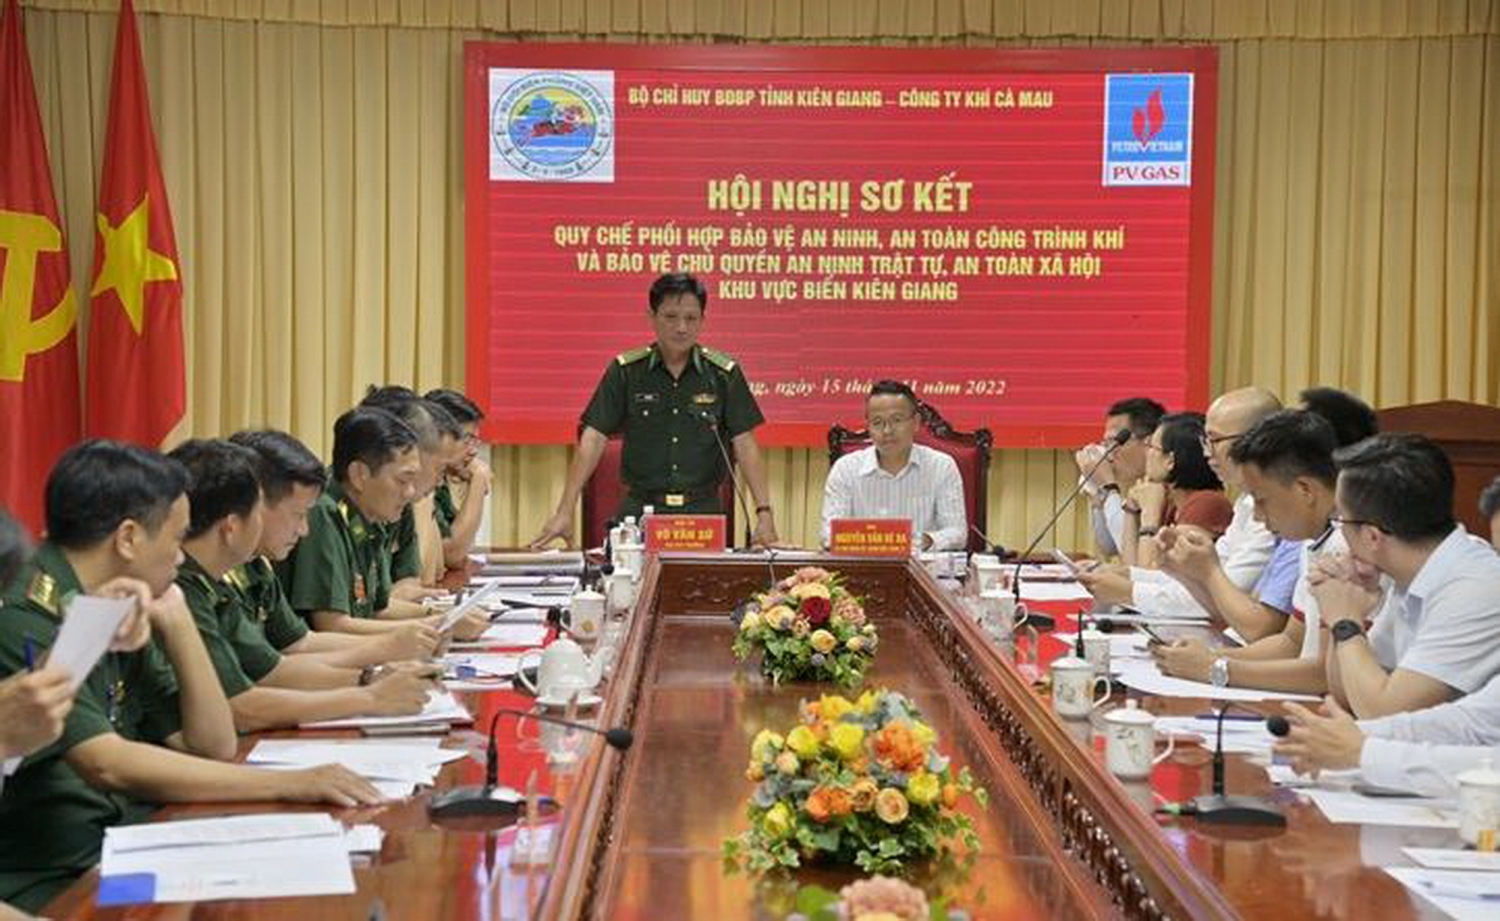 Bộ Chỉ huy Bộ đội Biên phòng tỉnh Kiên Giang và Công ty Khí Cà Mau tổ chức Hội nghị đánh giá kết quả phối hợp